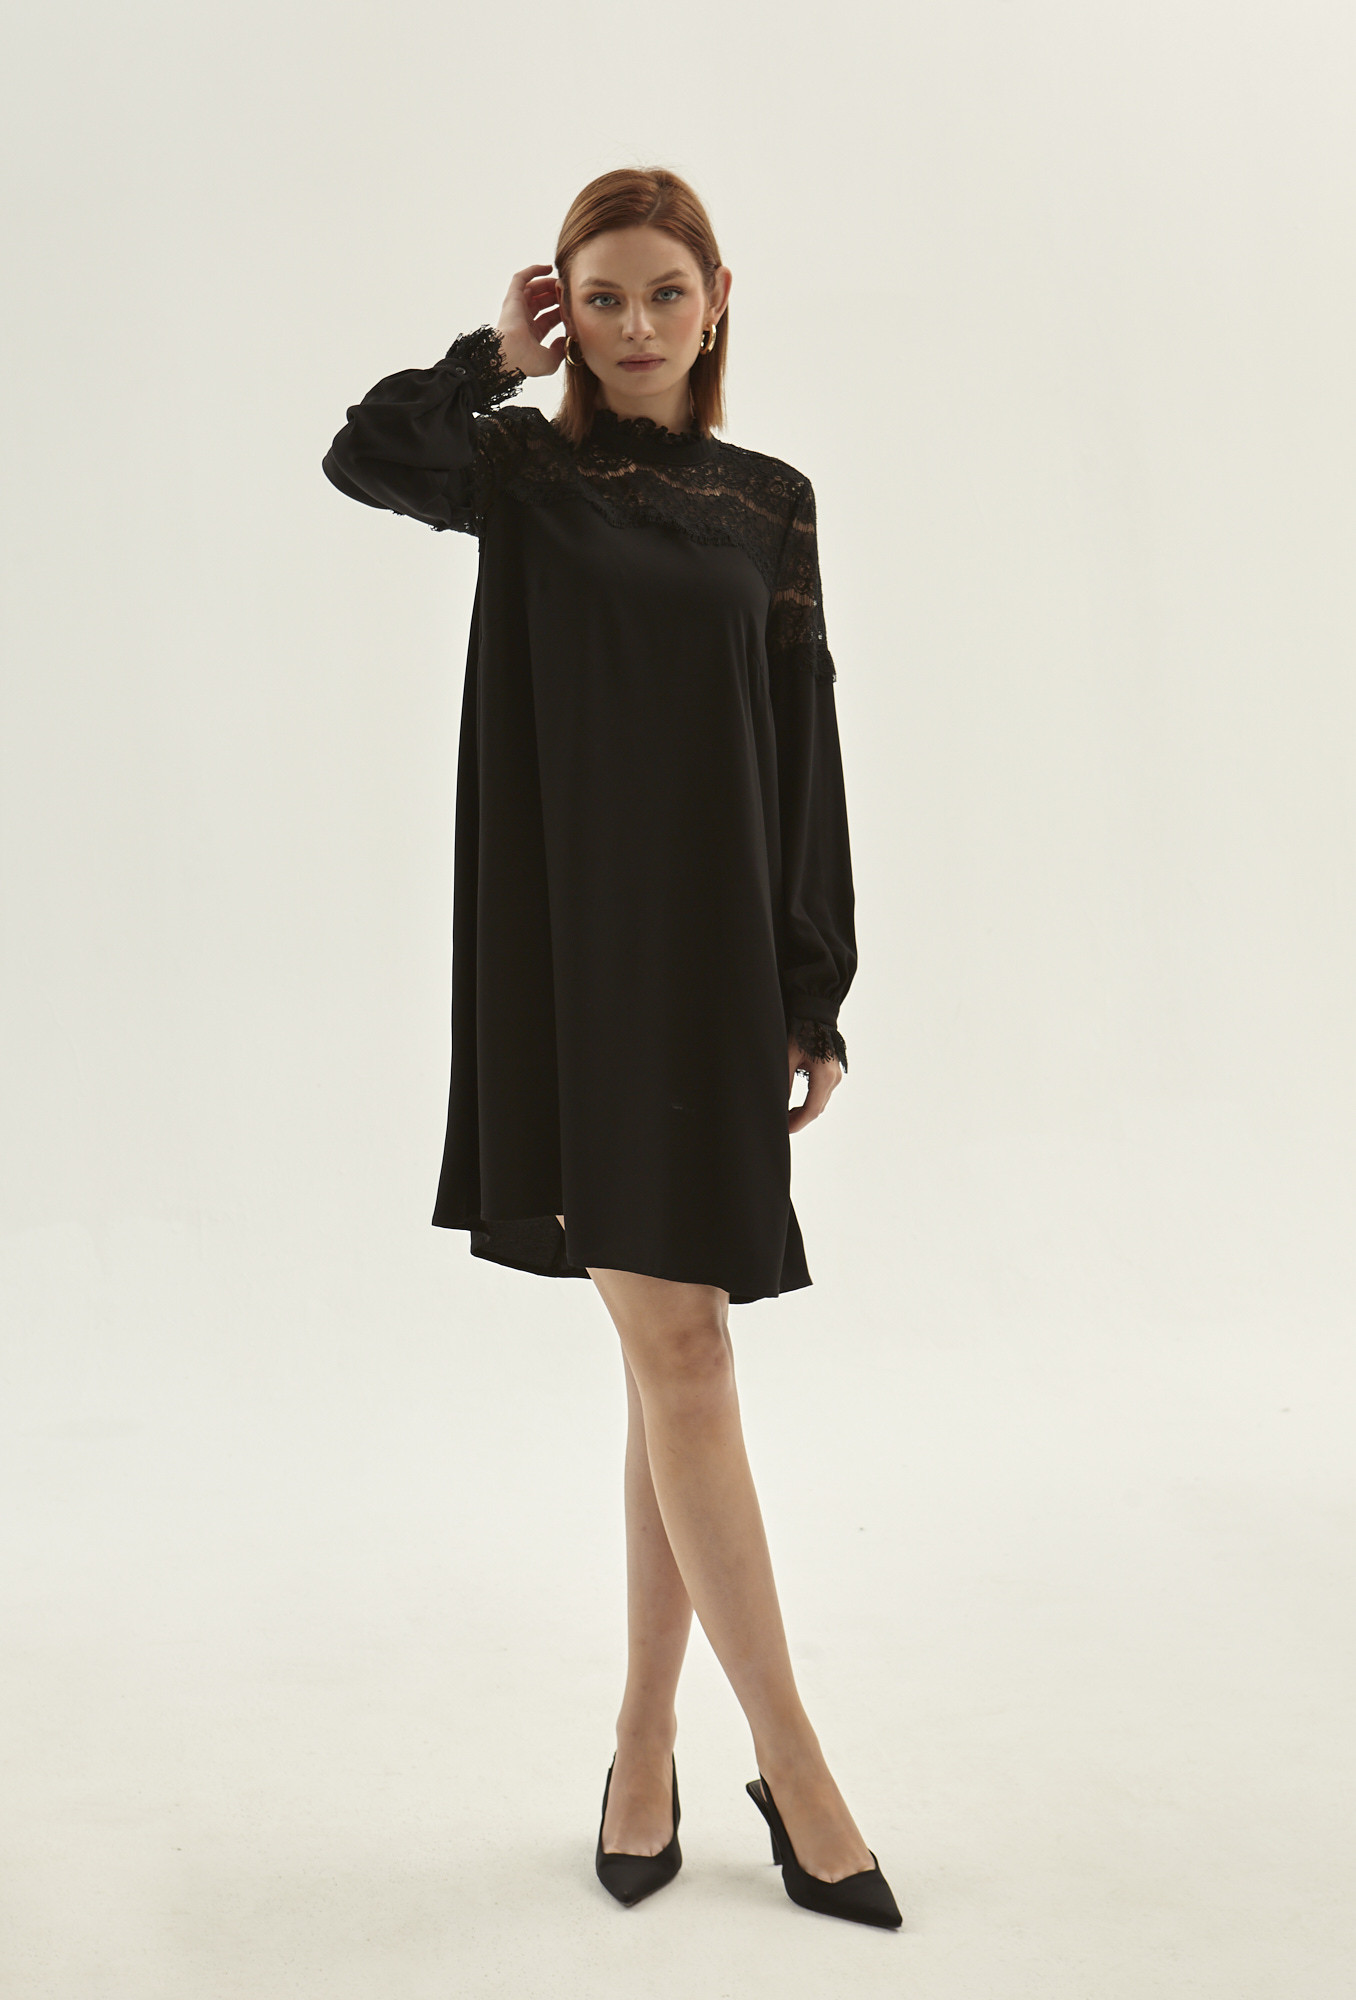 Monnari Šaty Černé šaty s krajkovým panelem Černé 38